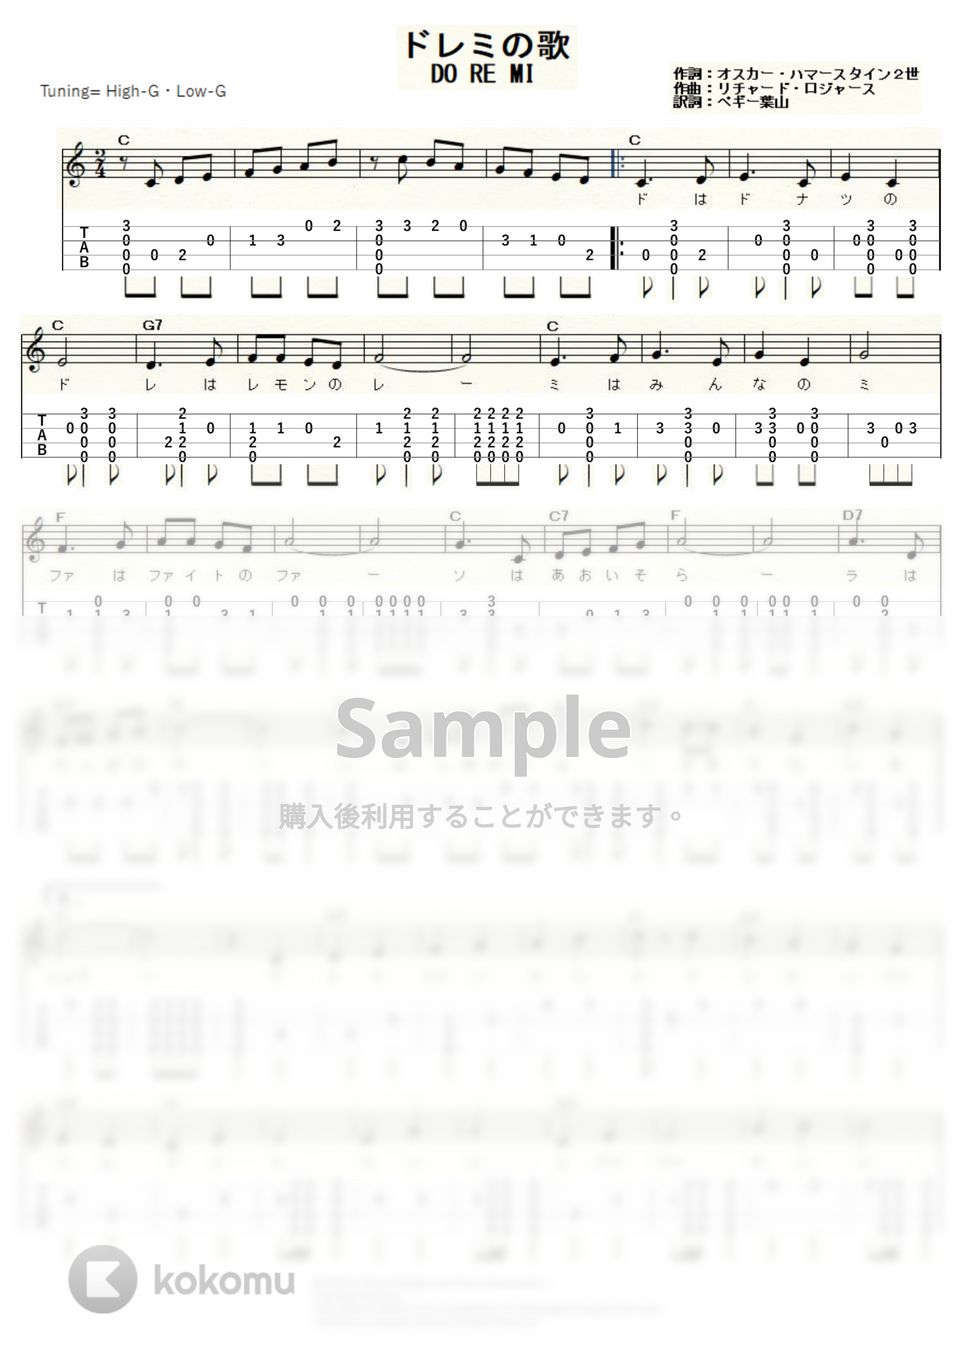 リチャード・ロジャース - ドレミの歌 (ｳｸﾚﾚｿﾛ / High-G,Low-G / 初～中級) by ukulelepapa